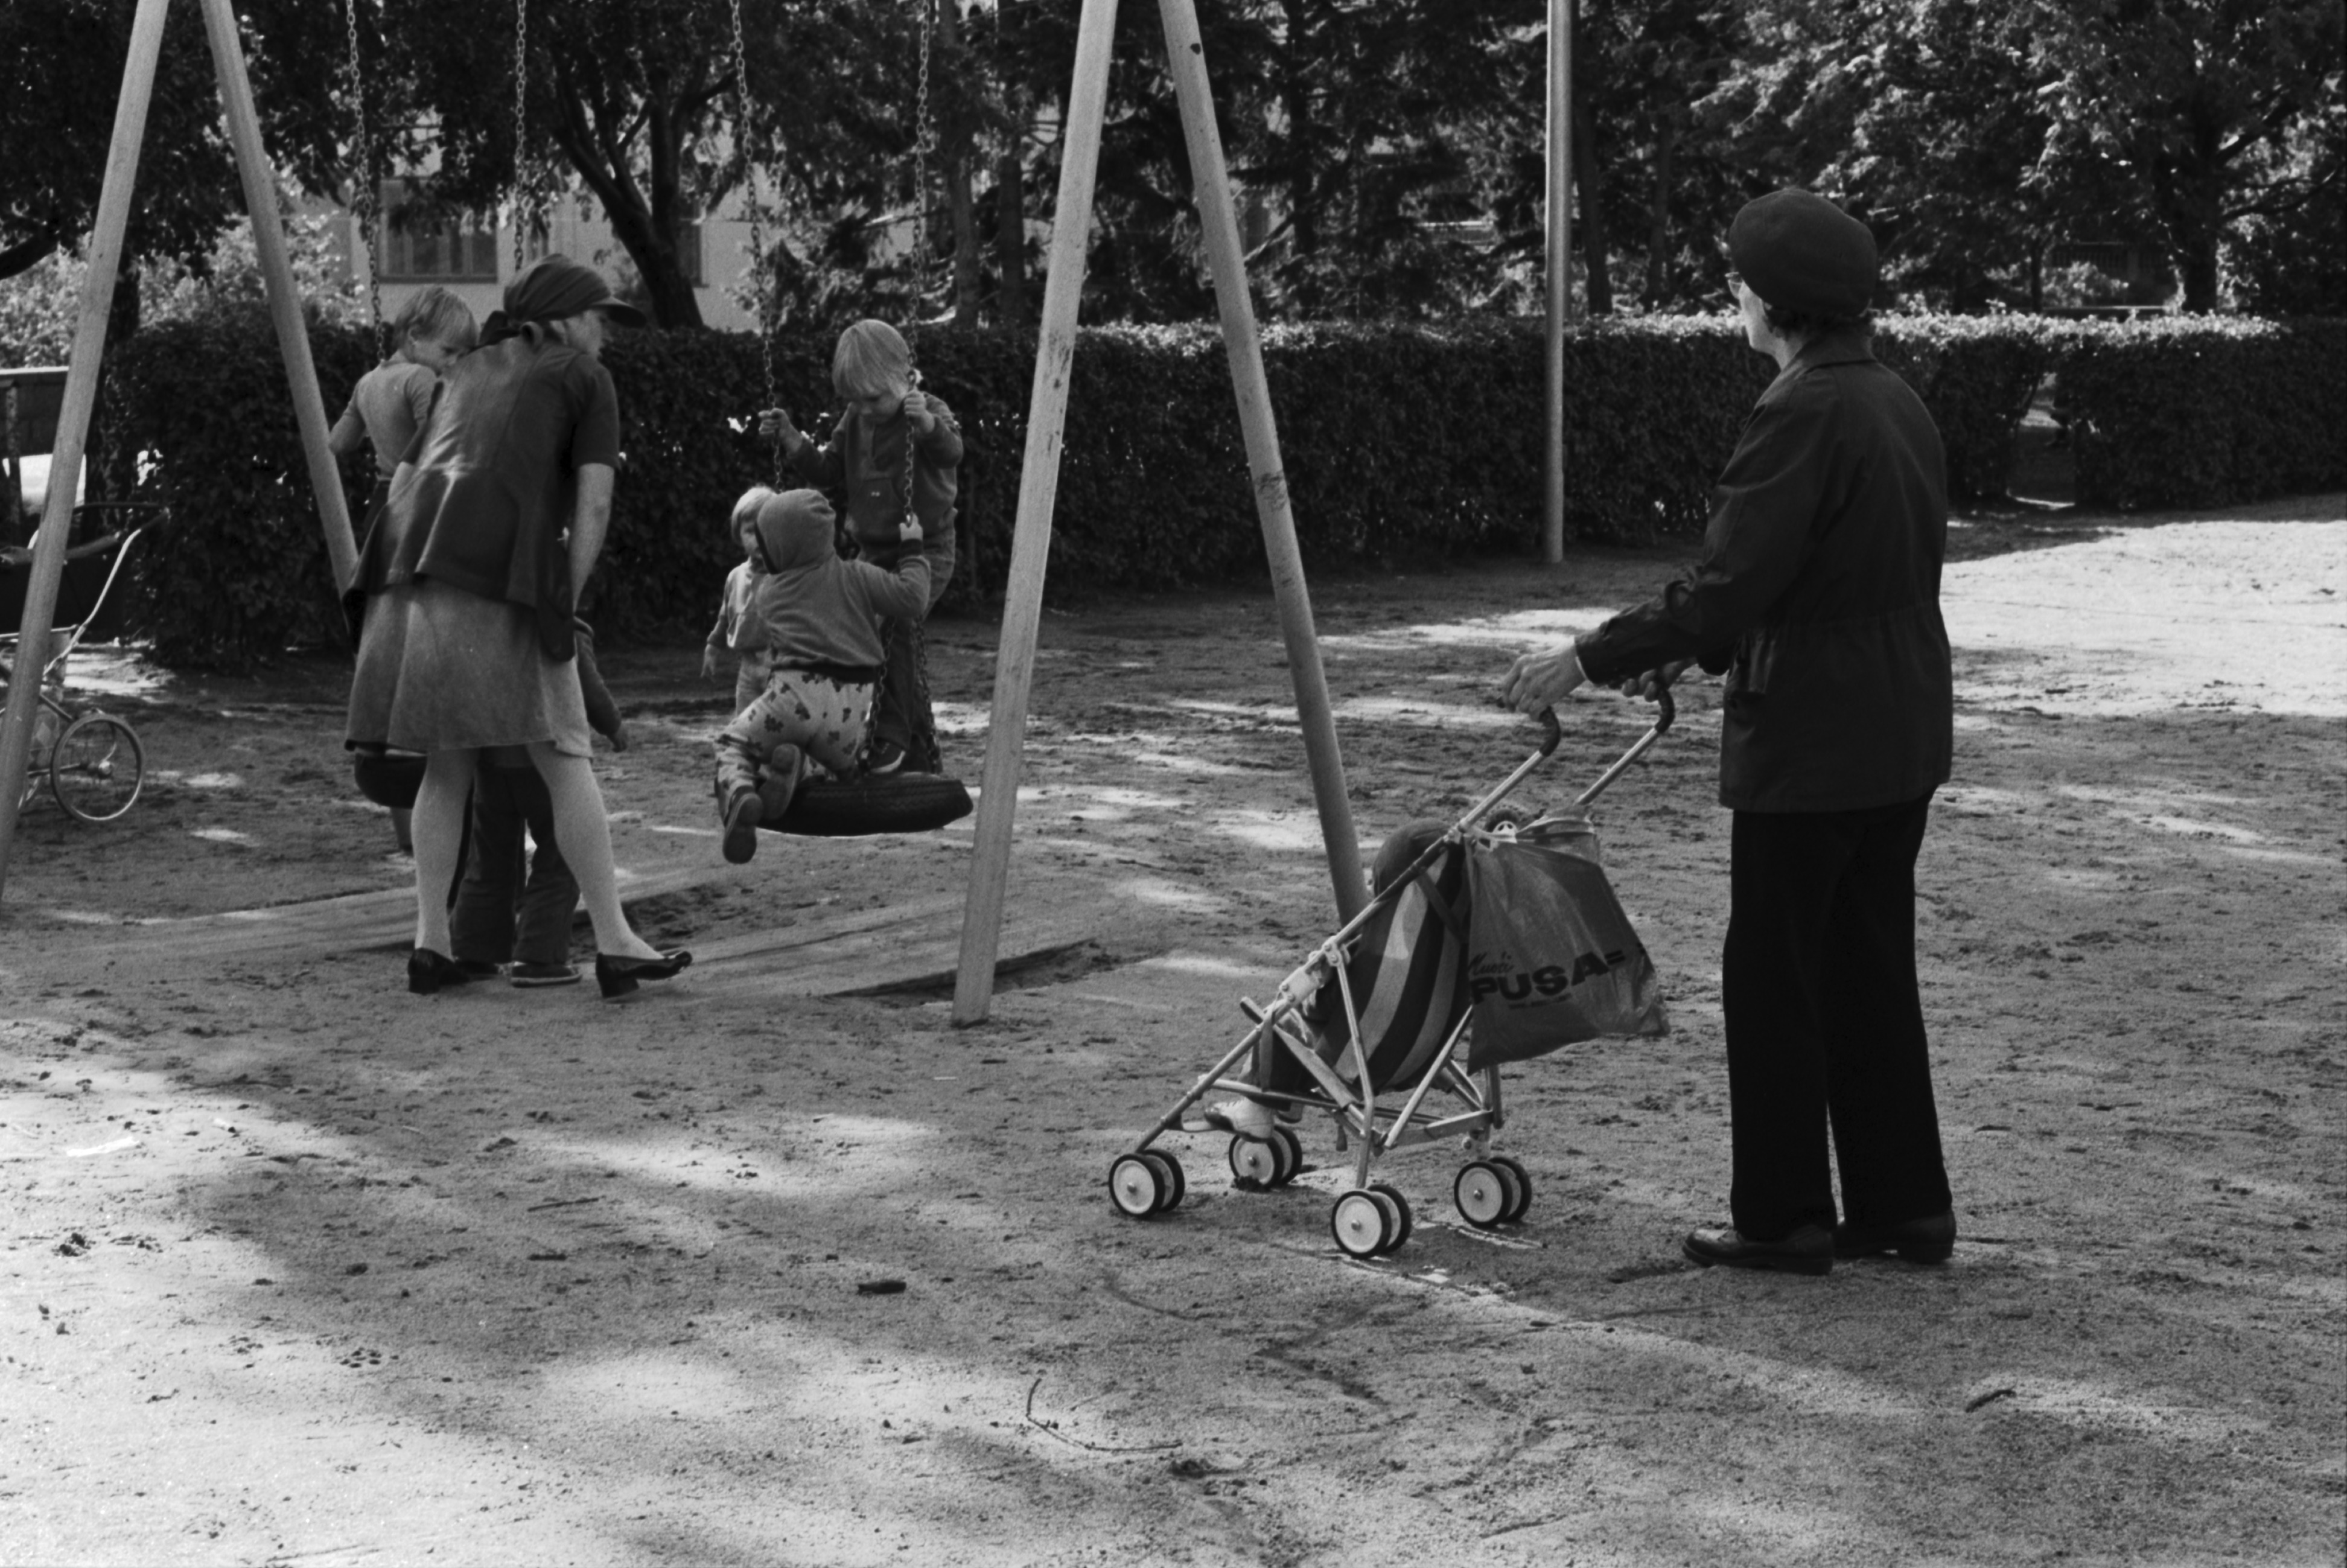 Tehtaanpuisto. Lapsia äiteineen ja hoitajineen keinumassa Tehtaanpuiston leikkipaikalla.